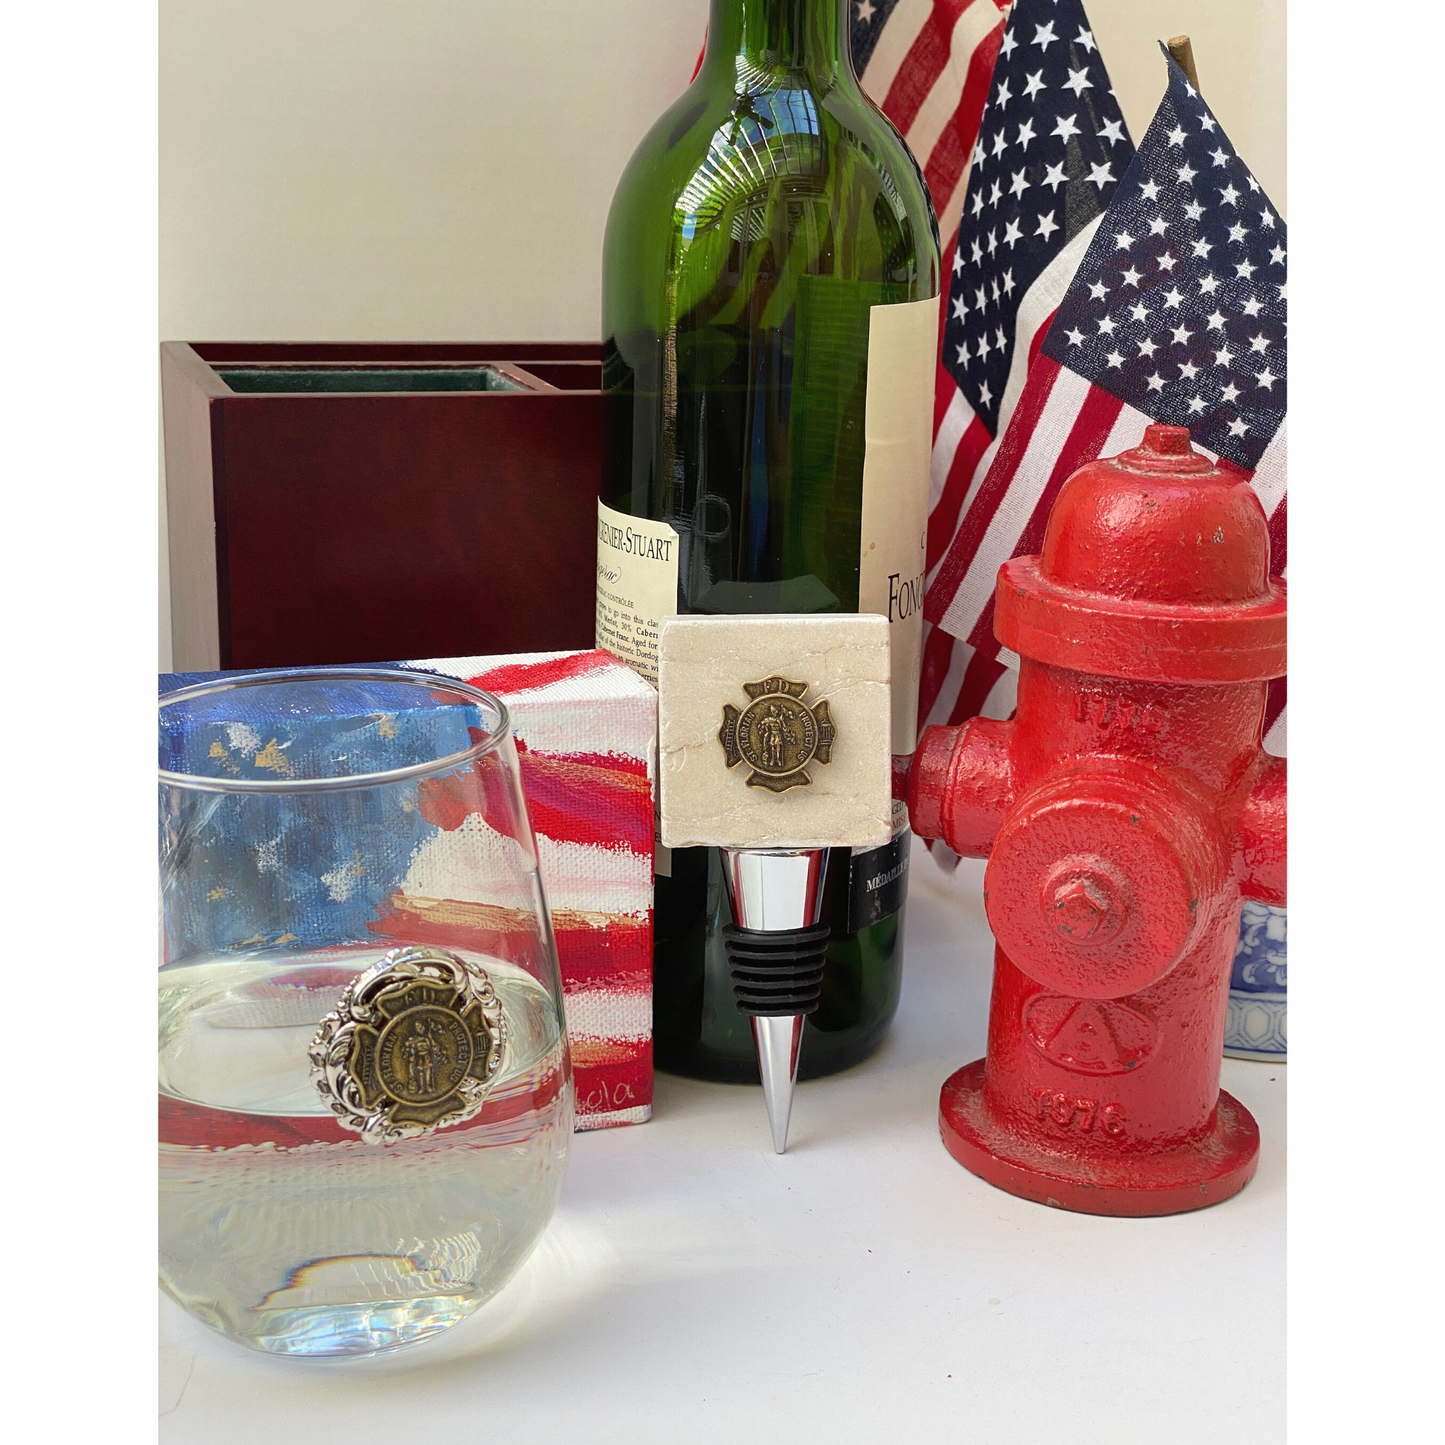 Firefighter Saint Florian Medallion, stemless wine glass